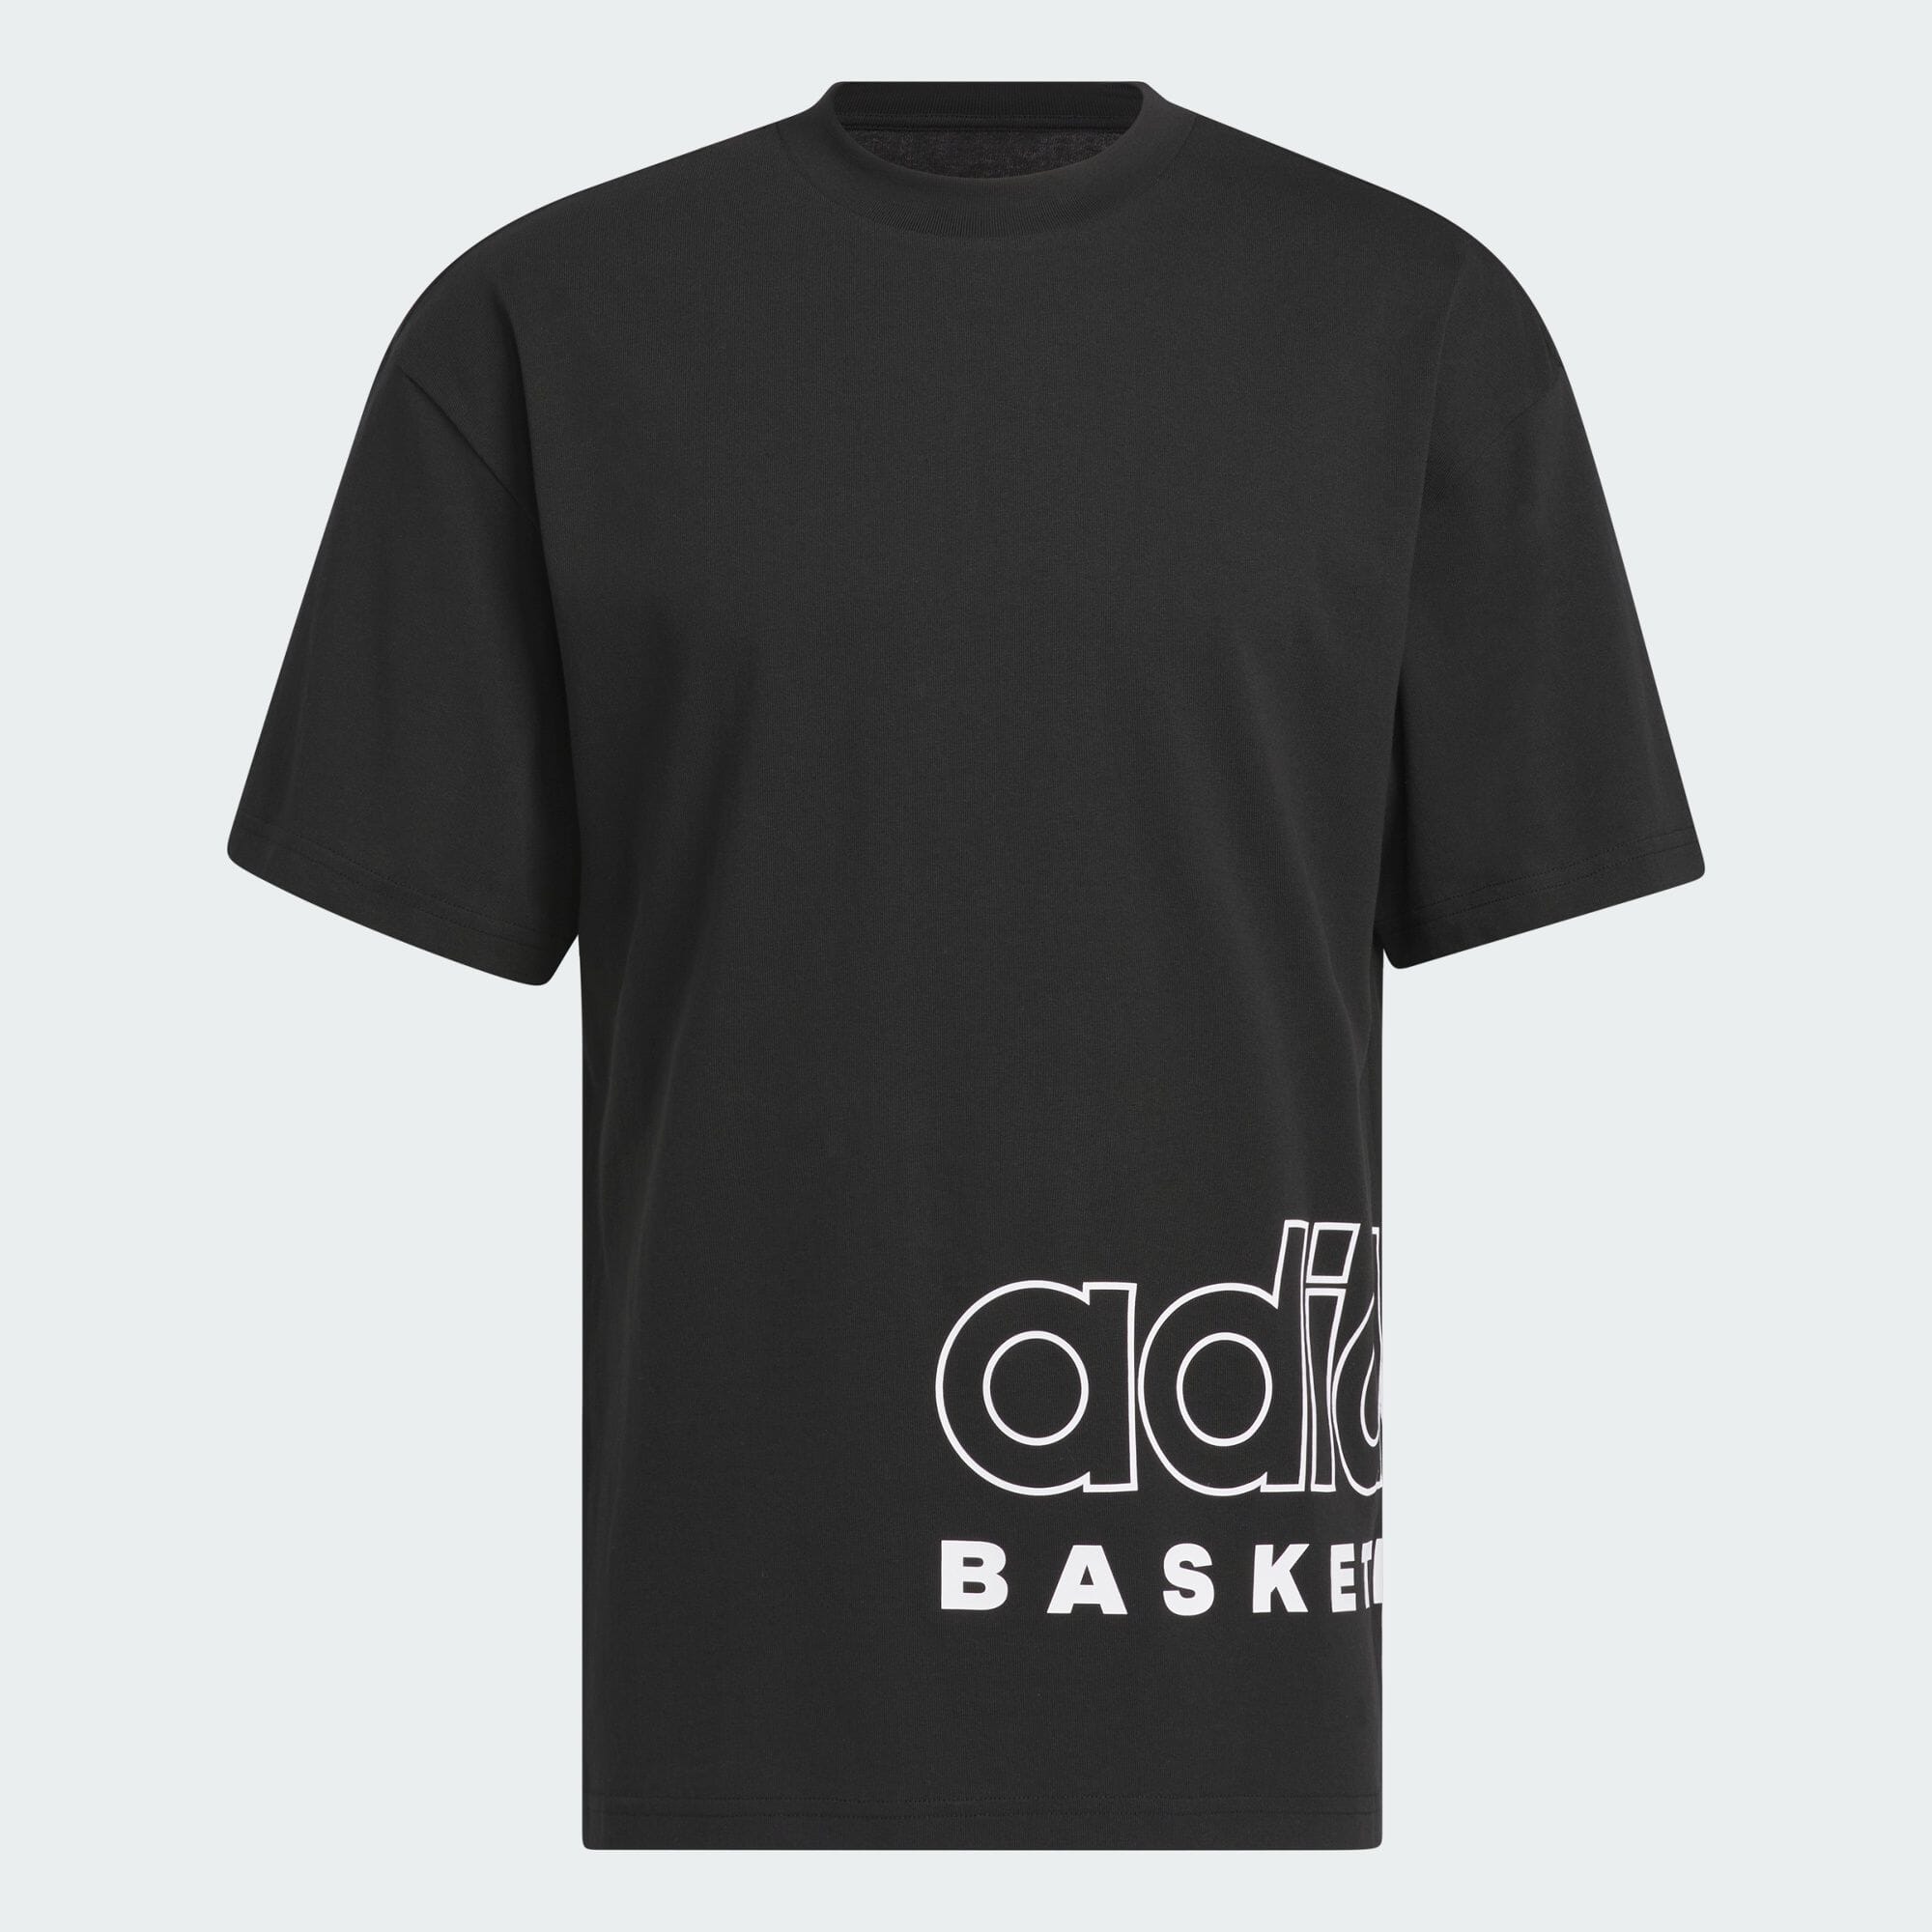 アディダス バスケットボール セレクト 半袖Tシャツ メンズ バスケットボール